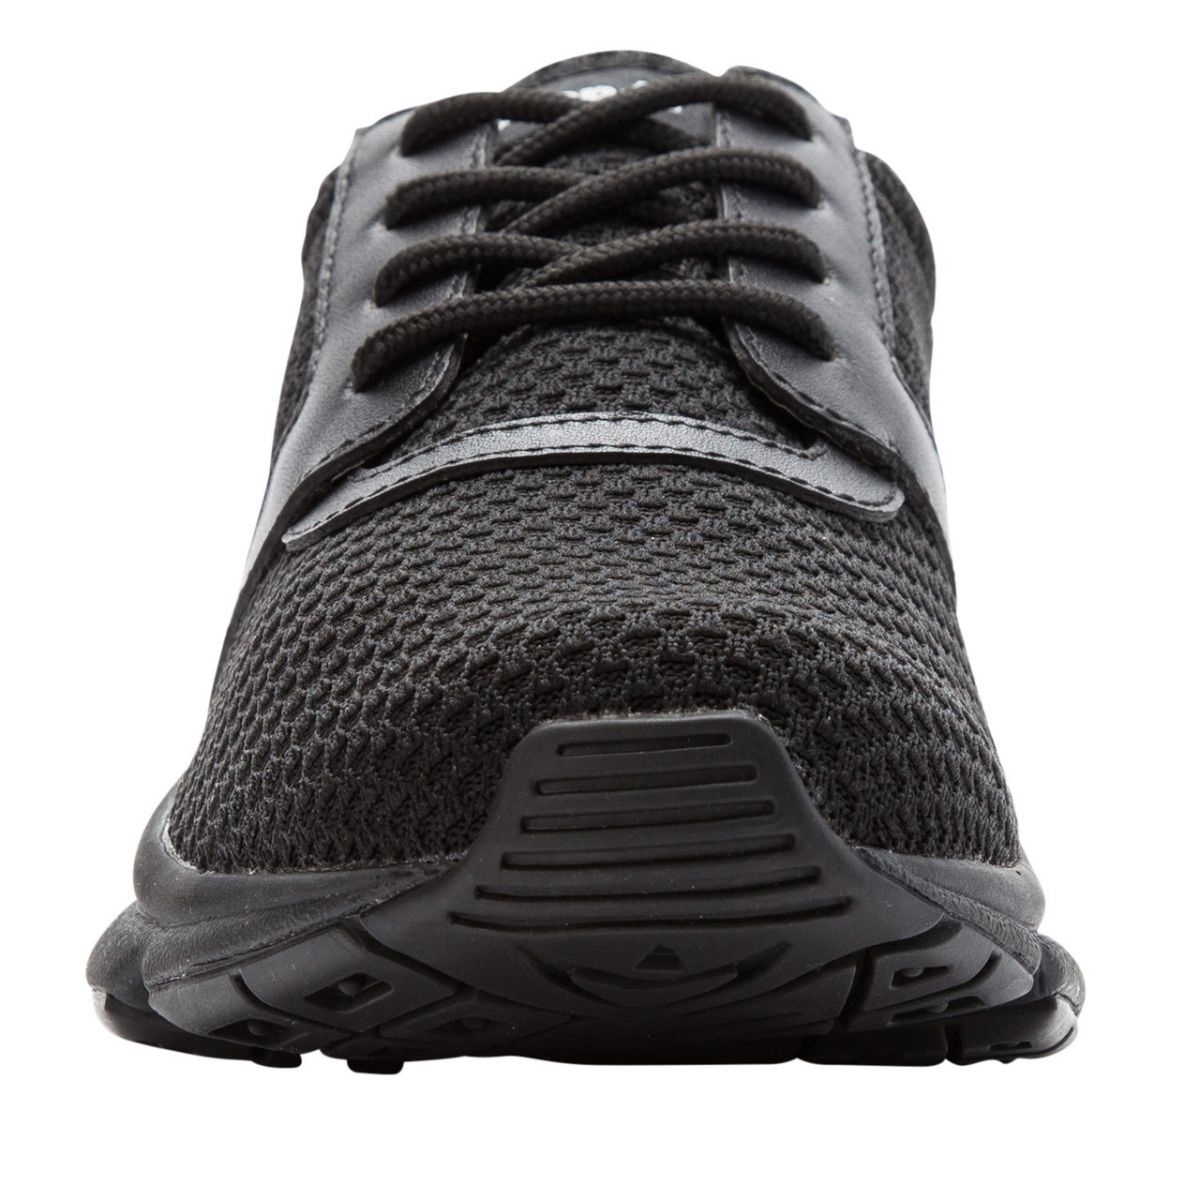 Propet Women's Stability X Walking Shoe Black - WAA032MBLK BLACK - BLACK, 13 Wide